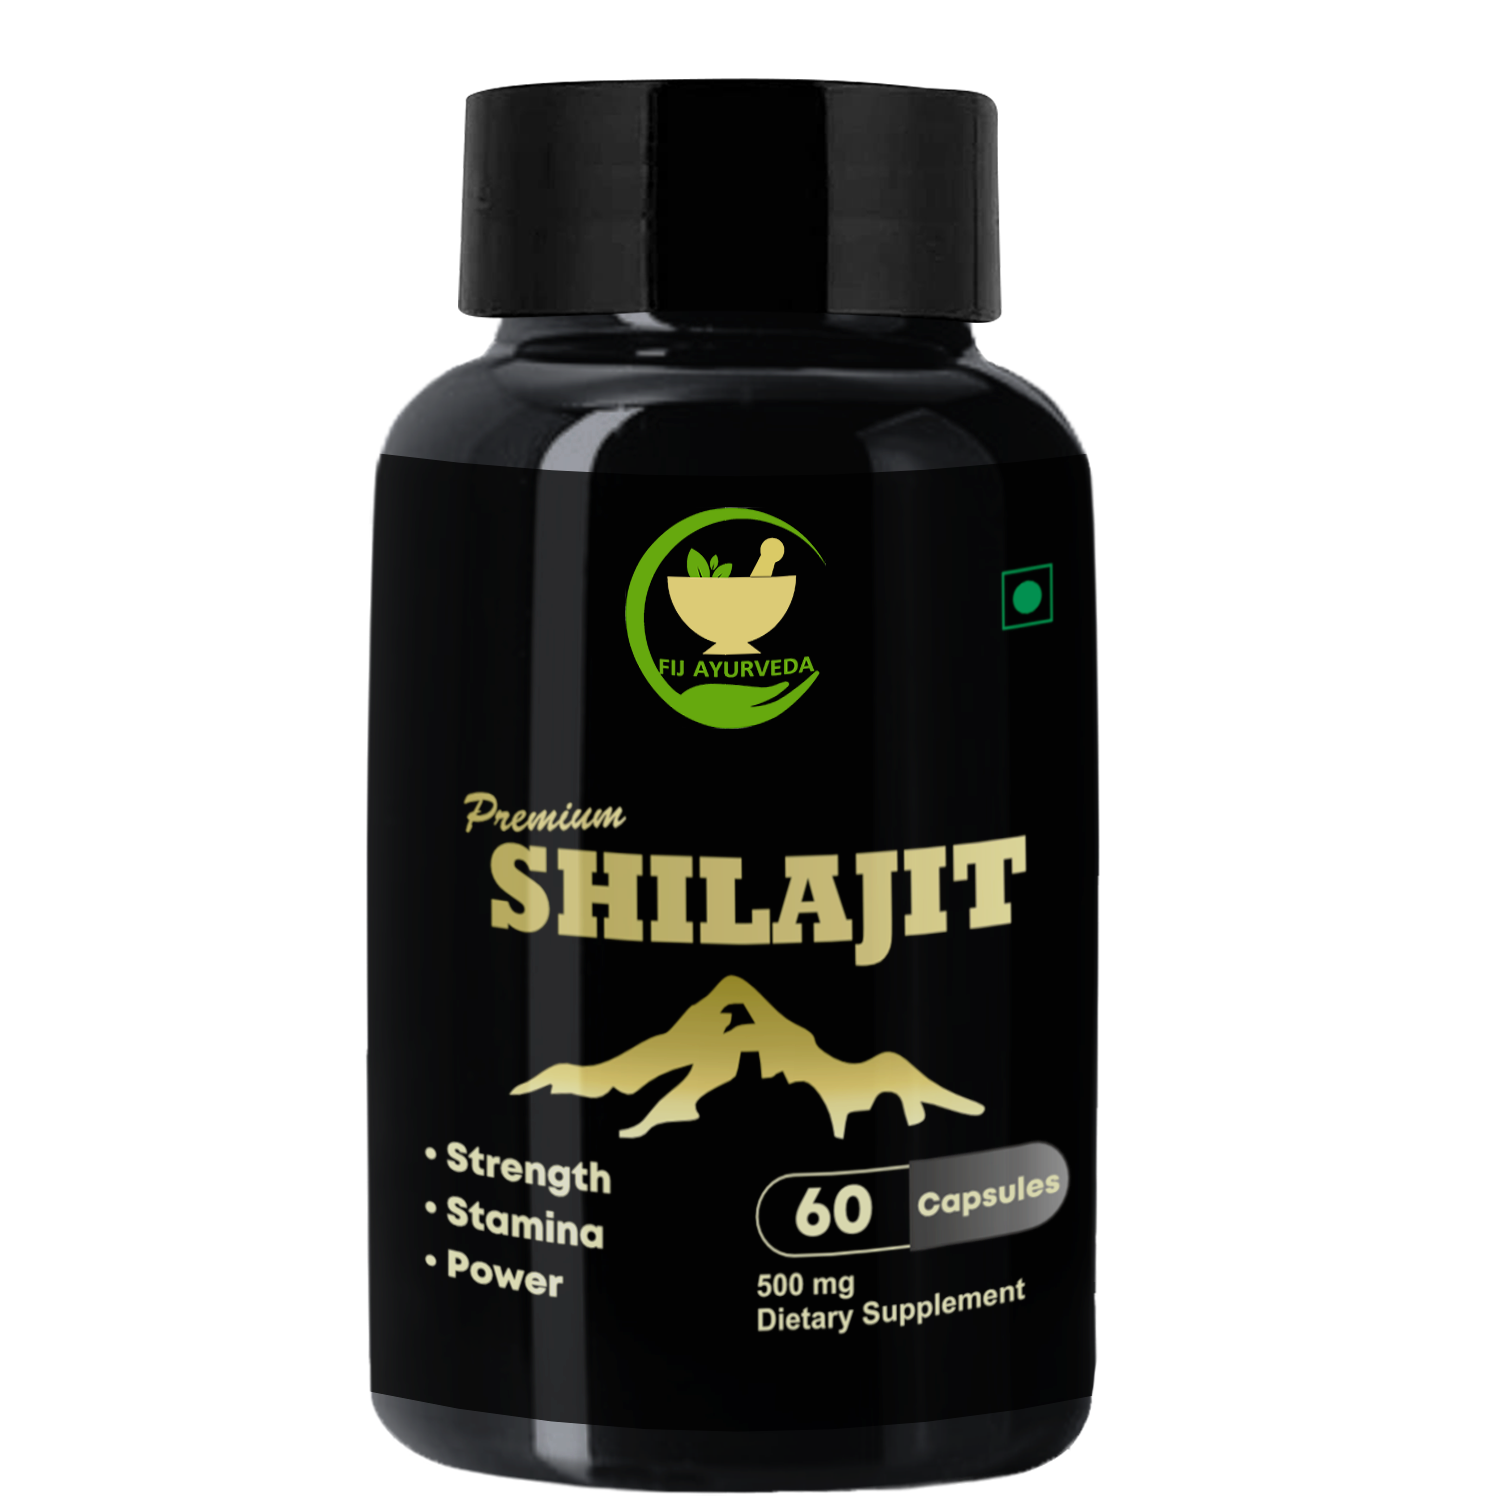     			FIJ AYURVEDA Premium Shilajit/Shilajeet Extract Capsule for Vigor & Vitality - 500mg 60 Capsules (Pack of 1)